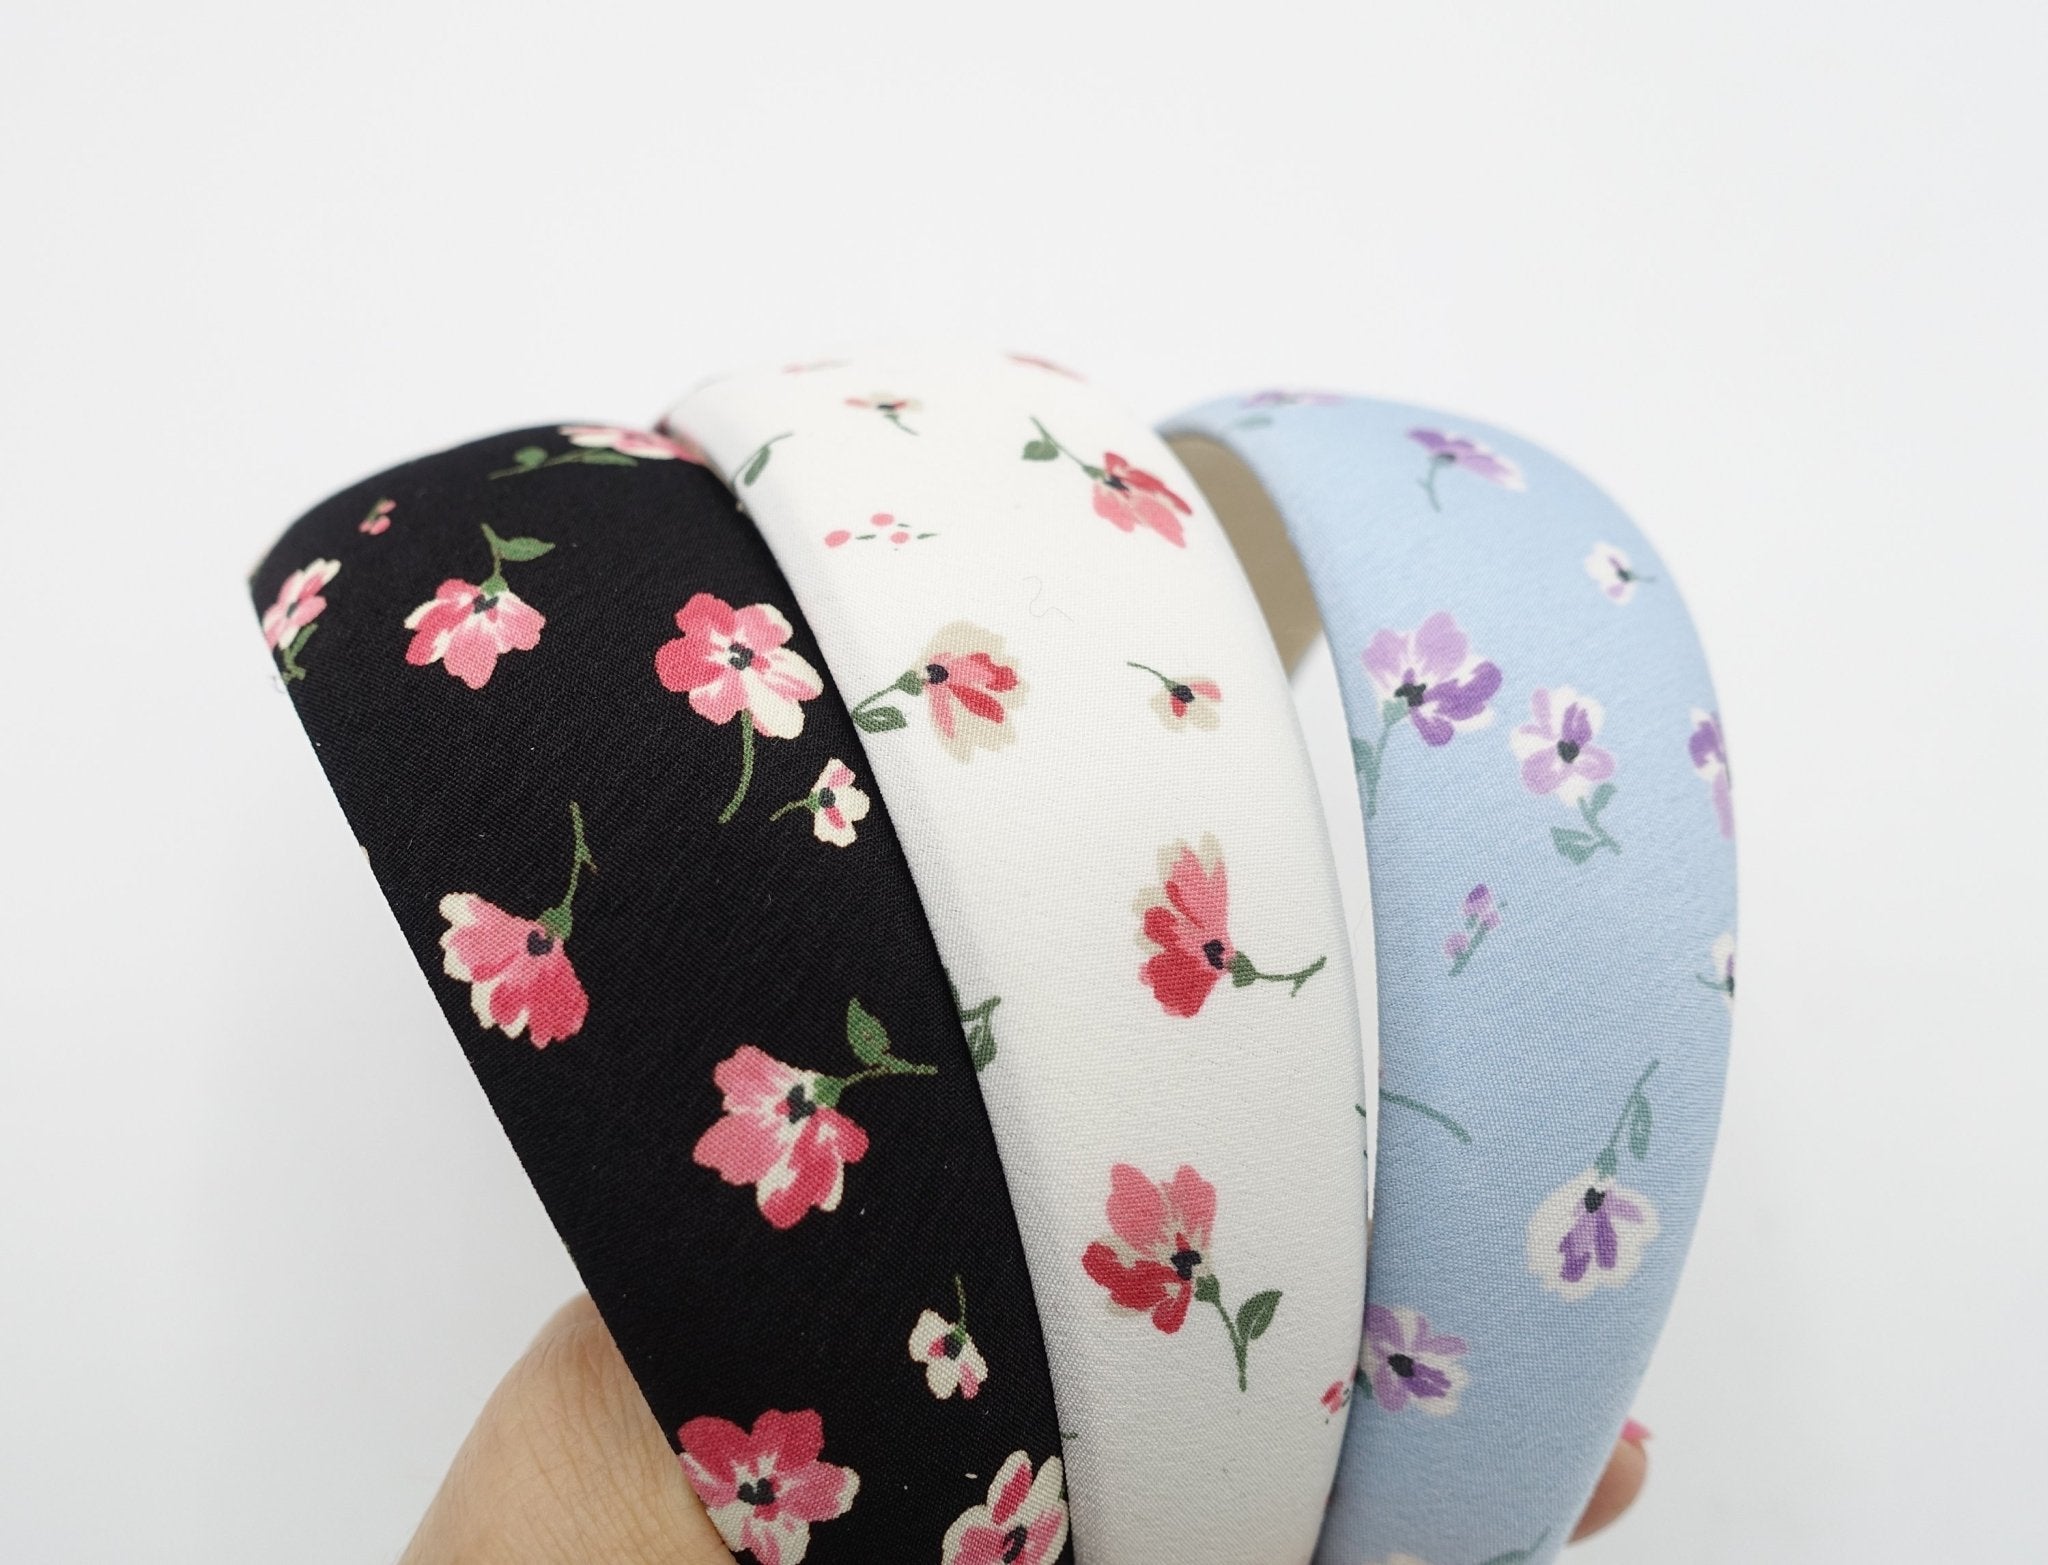 veryshine.com hairband/headband tiny floral padded headband flower print hairband hair accessory for women